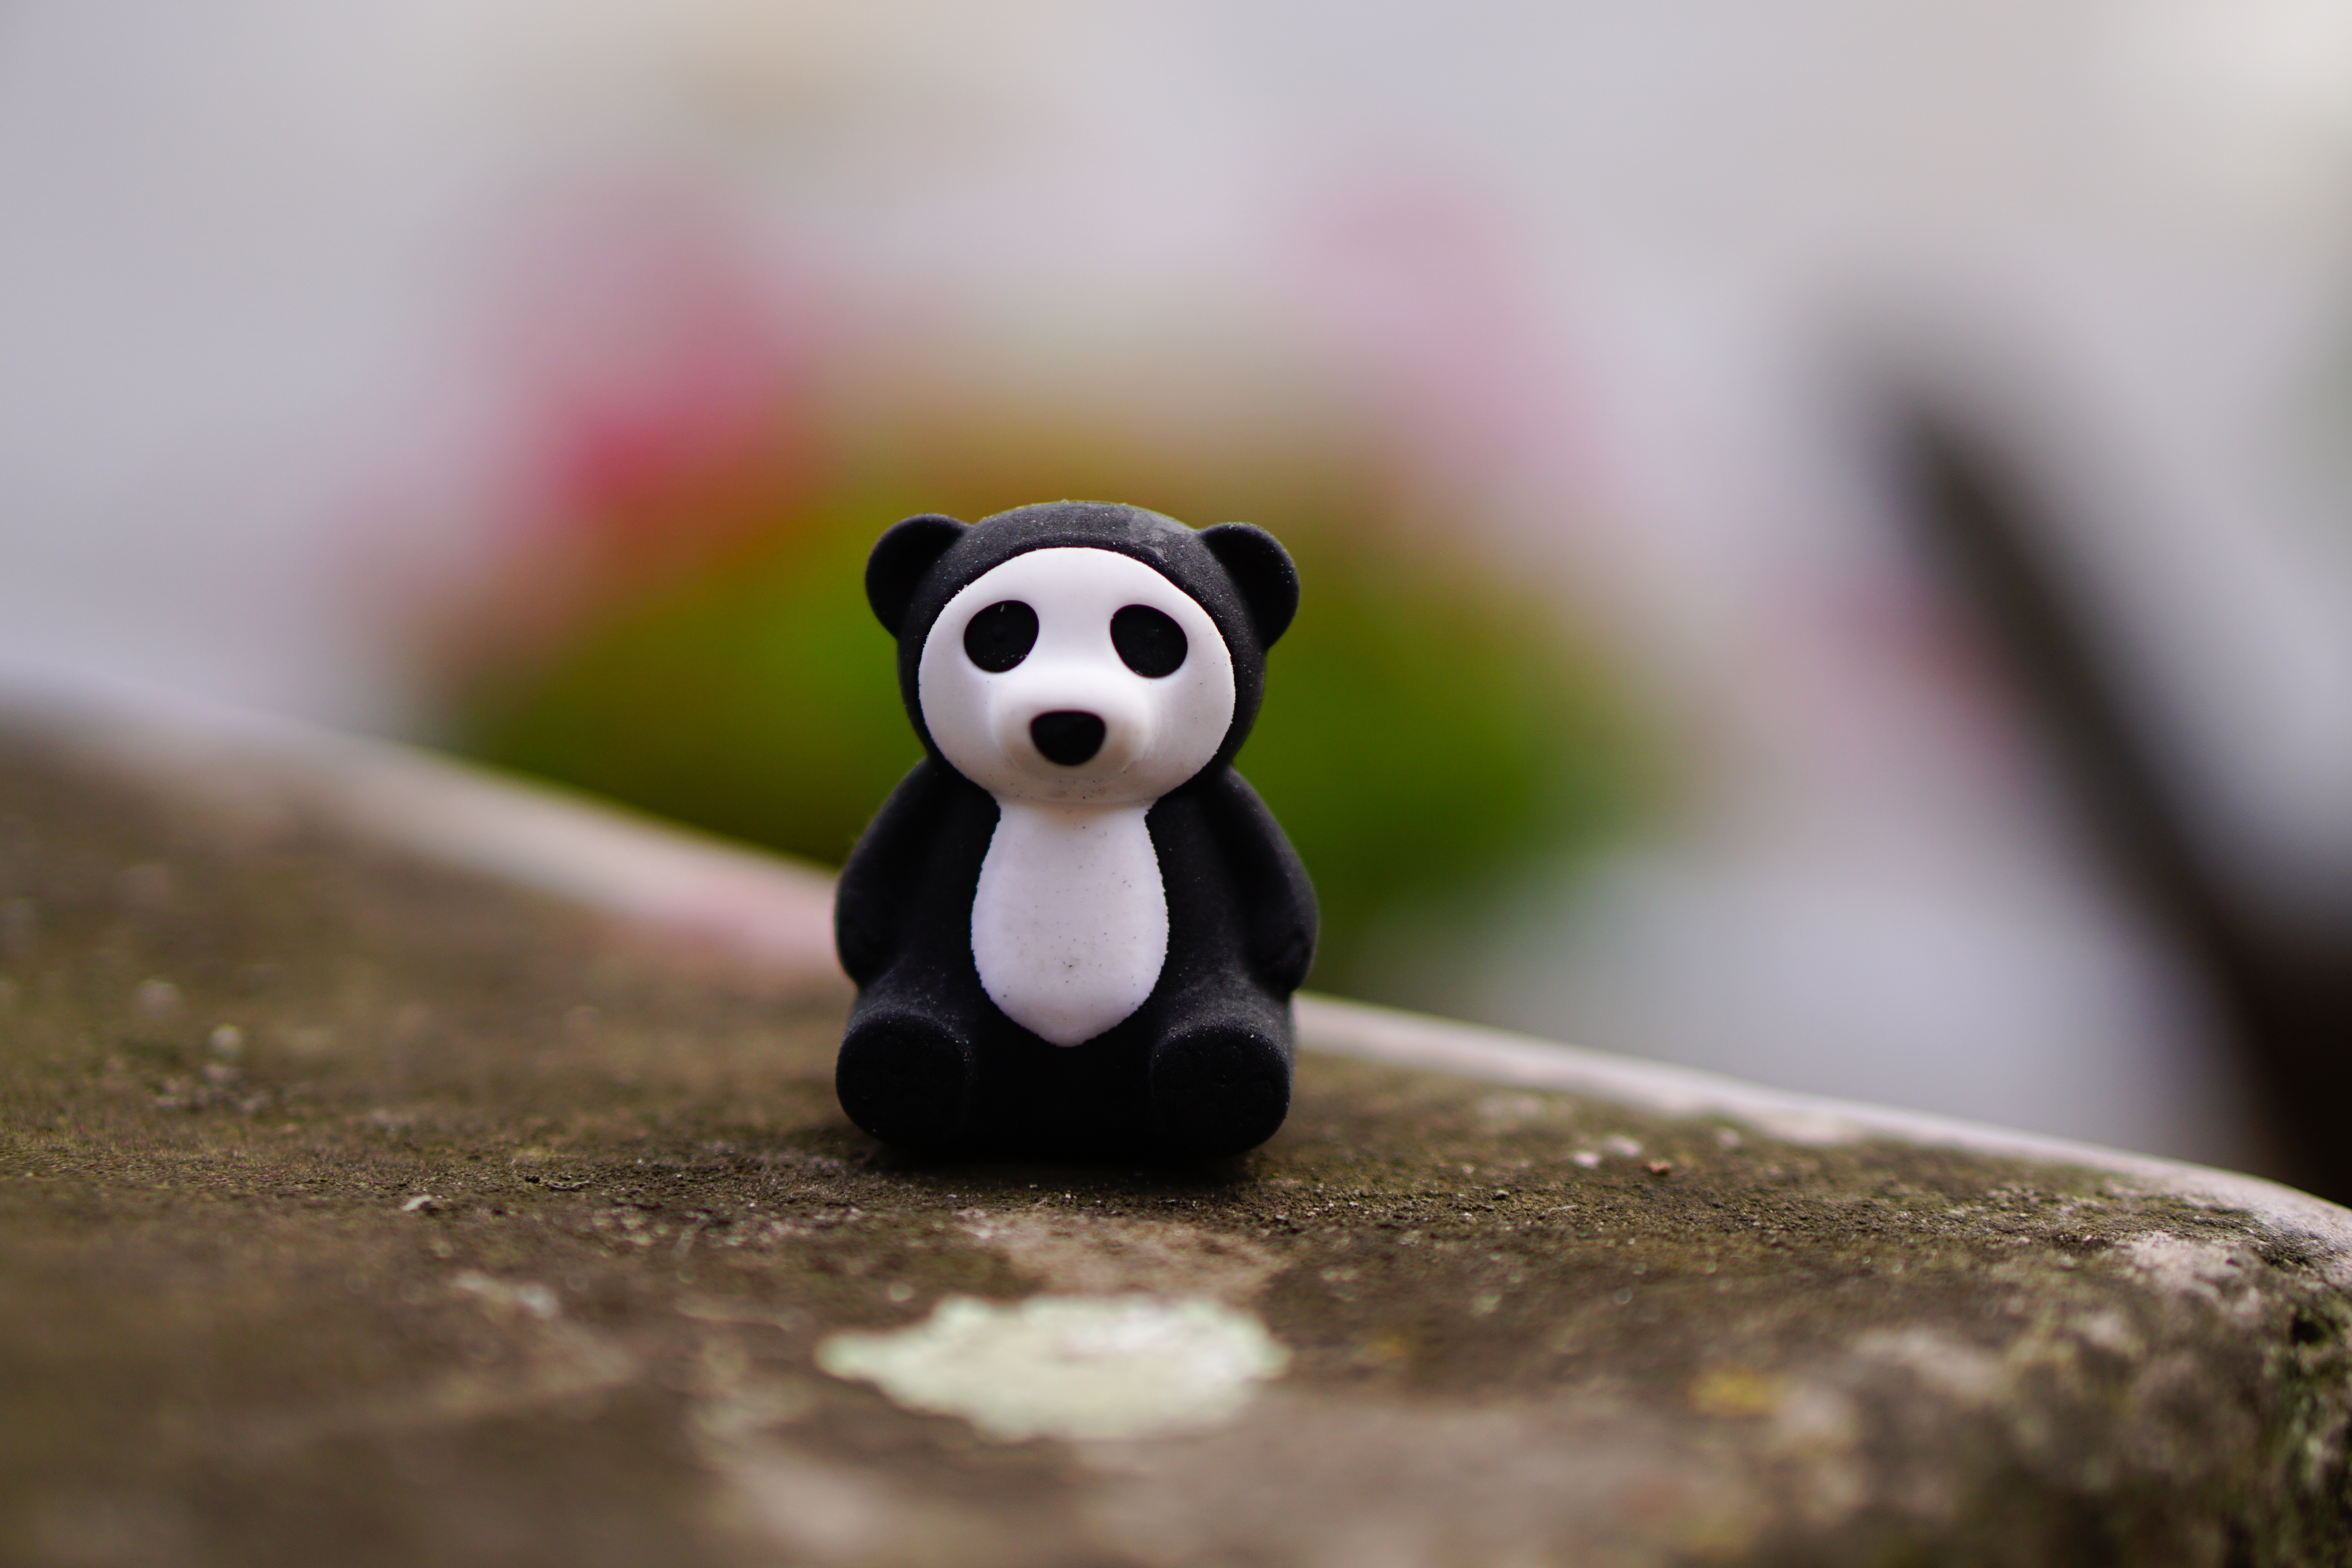 panda, miscellanea, miscellaneous, toy, statuette cellphone